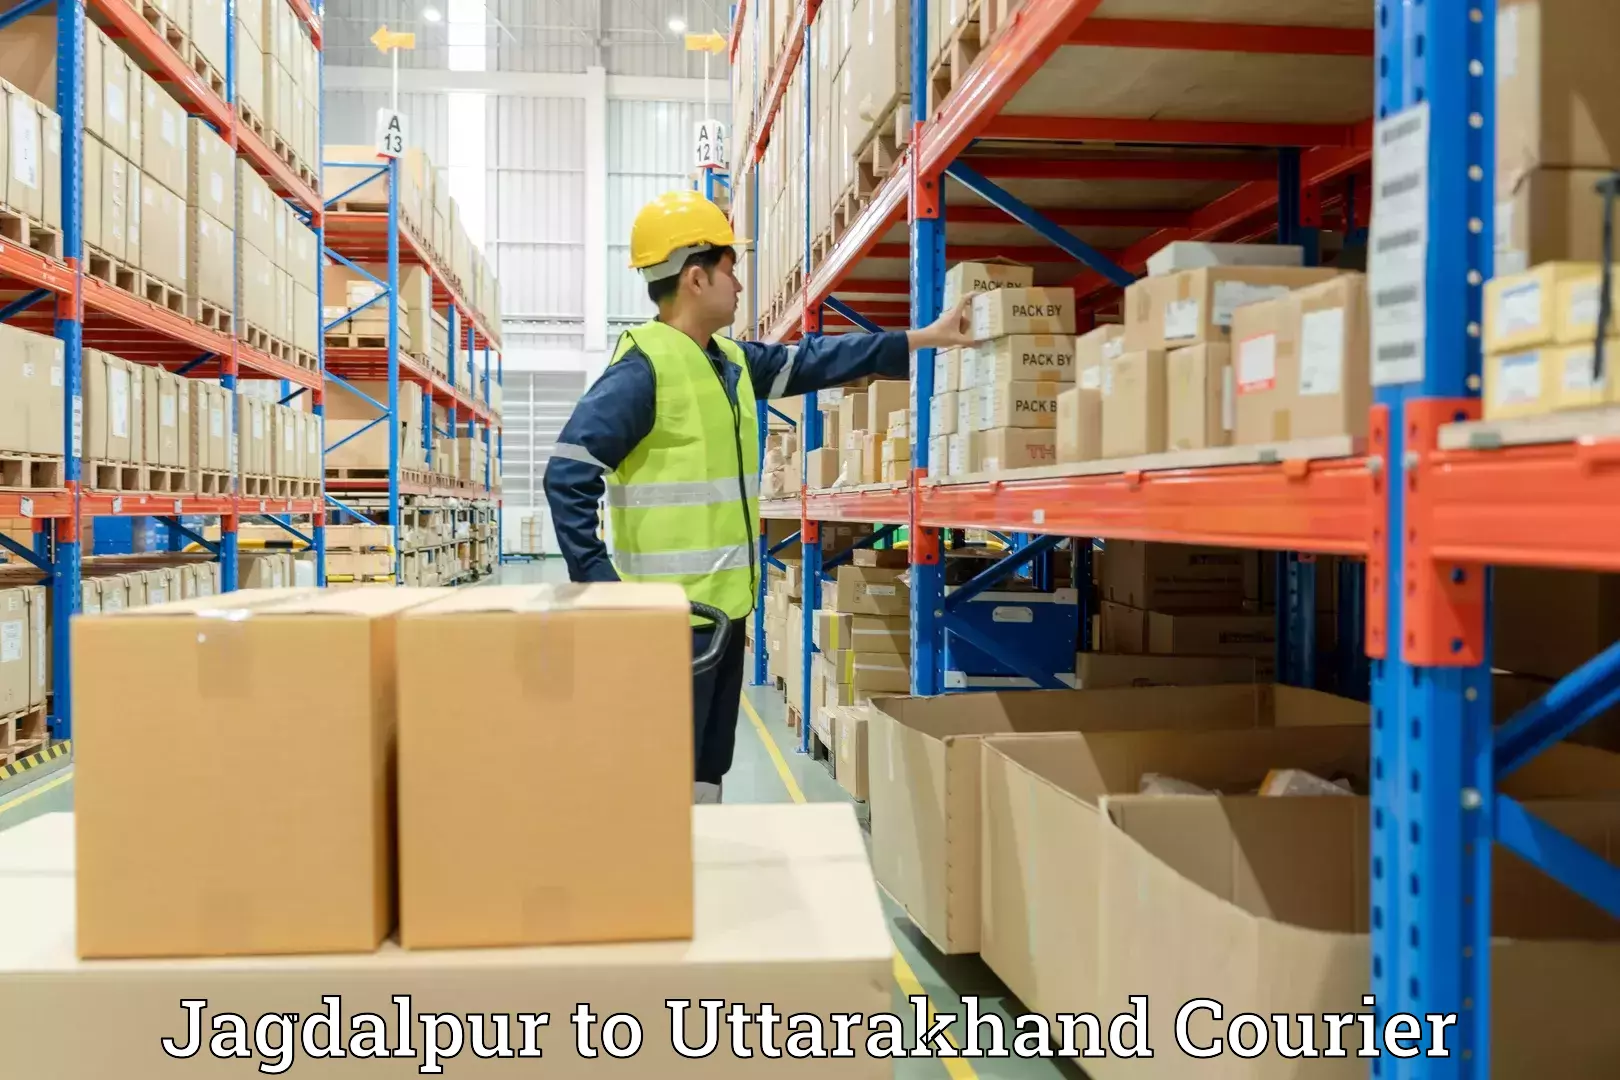 Stress-free household moving Jagdalpur to Uttarakhand